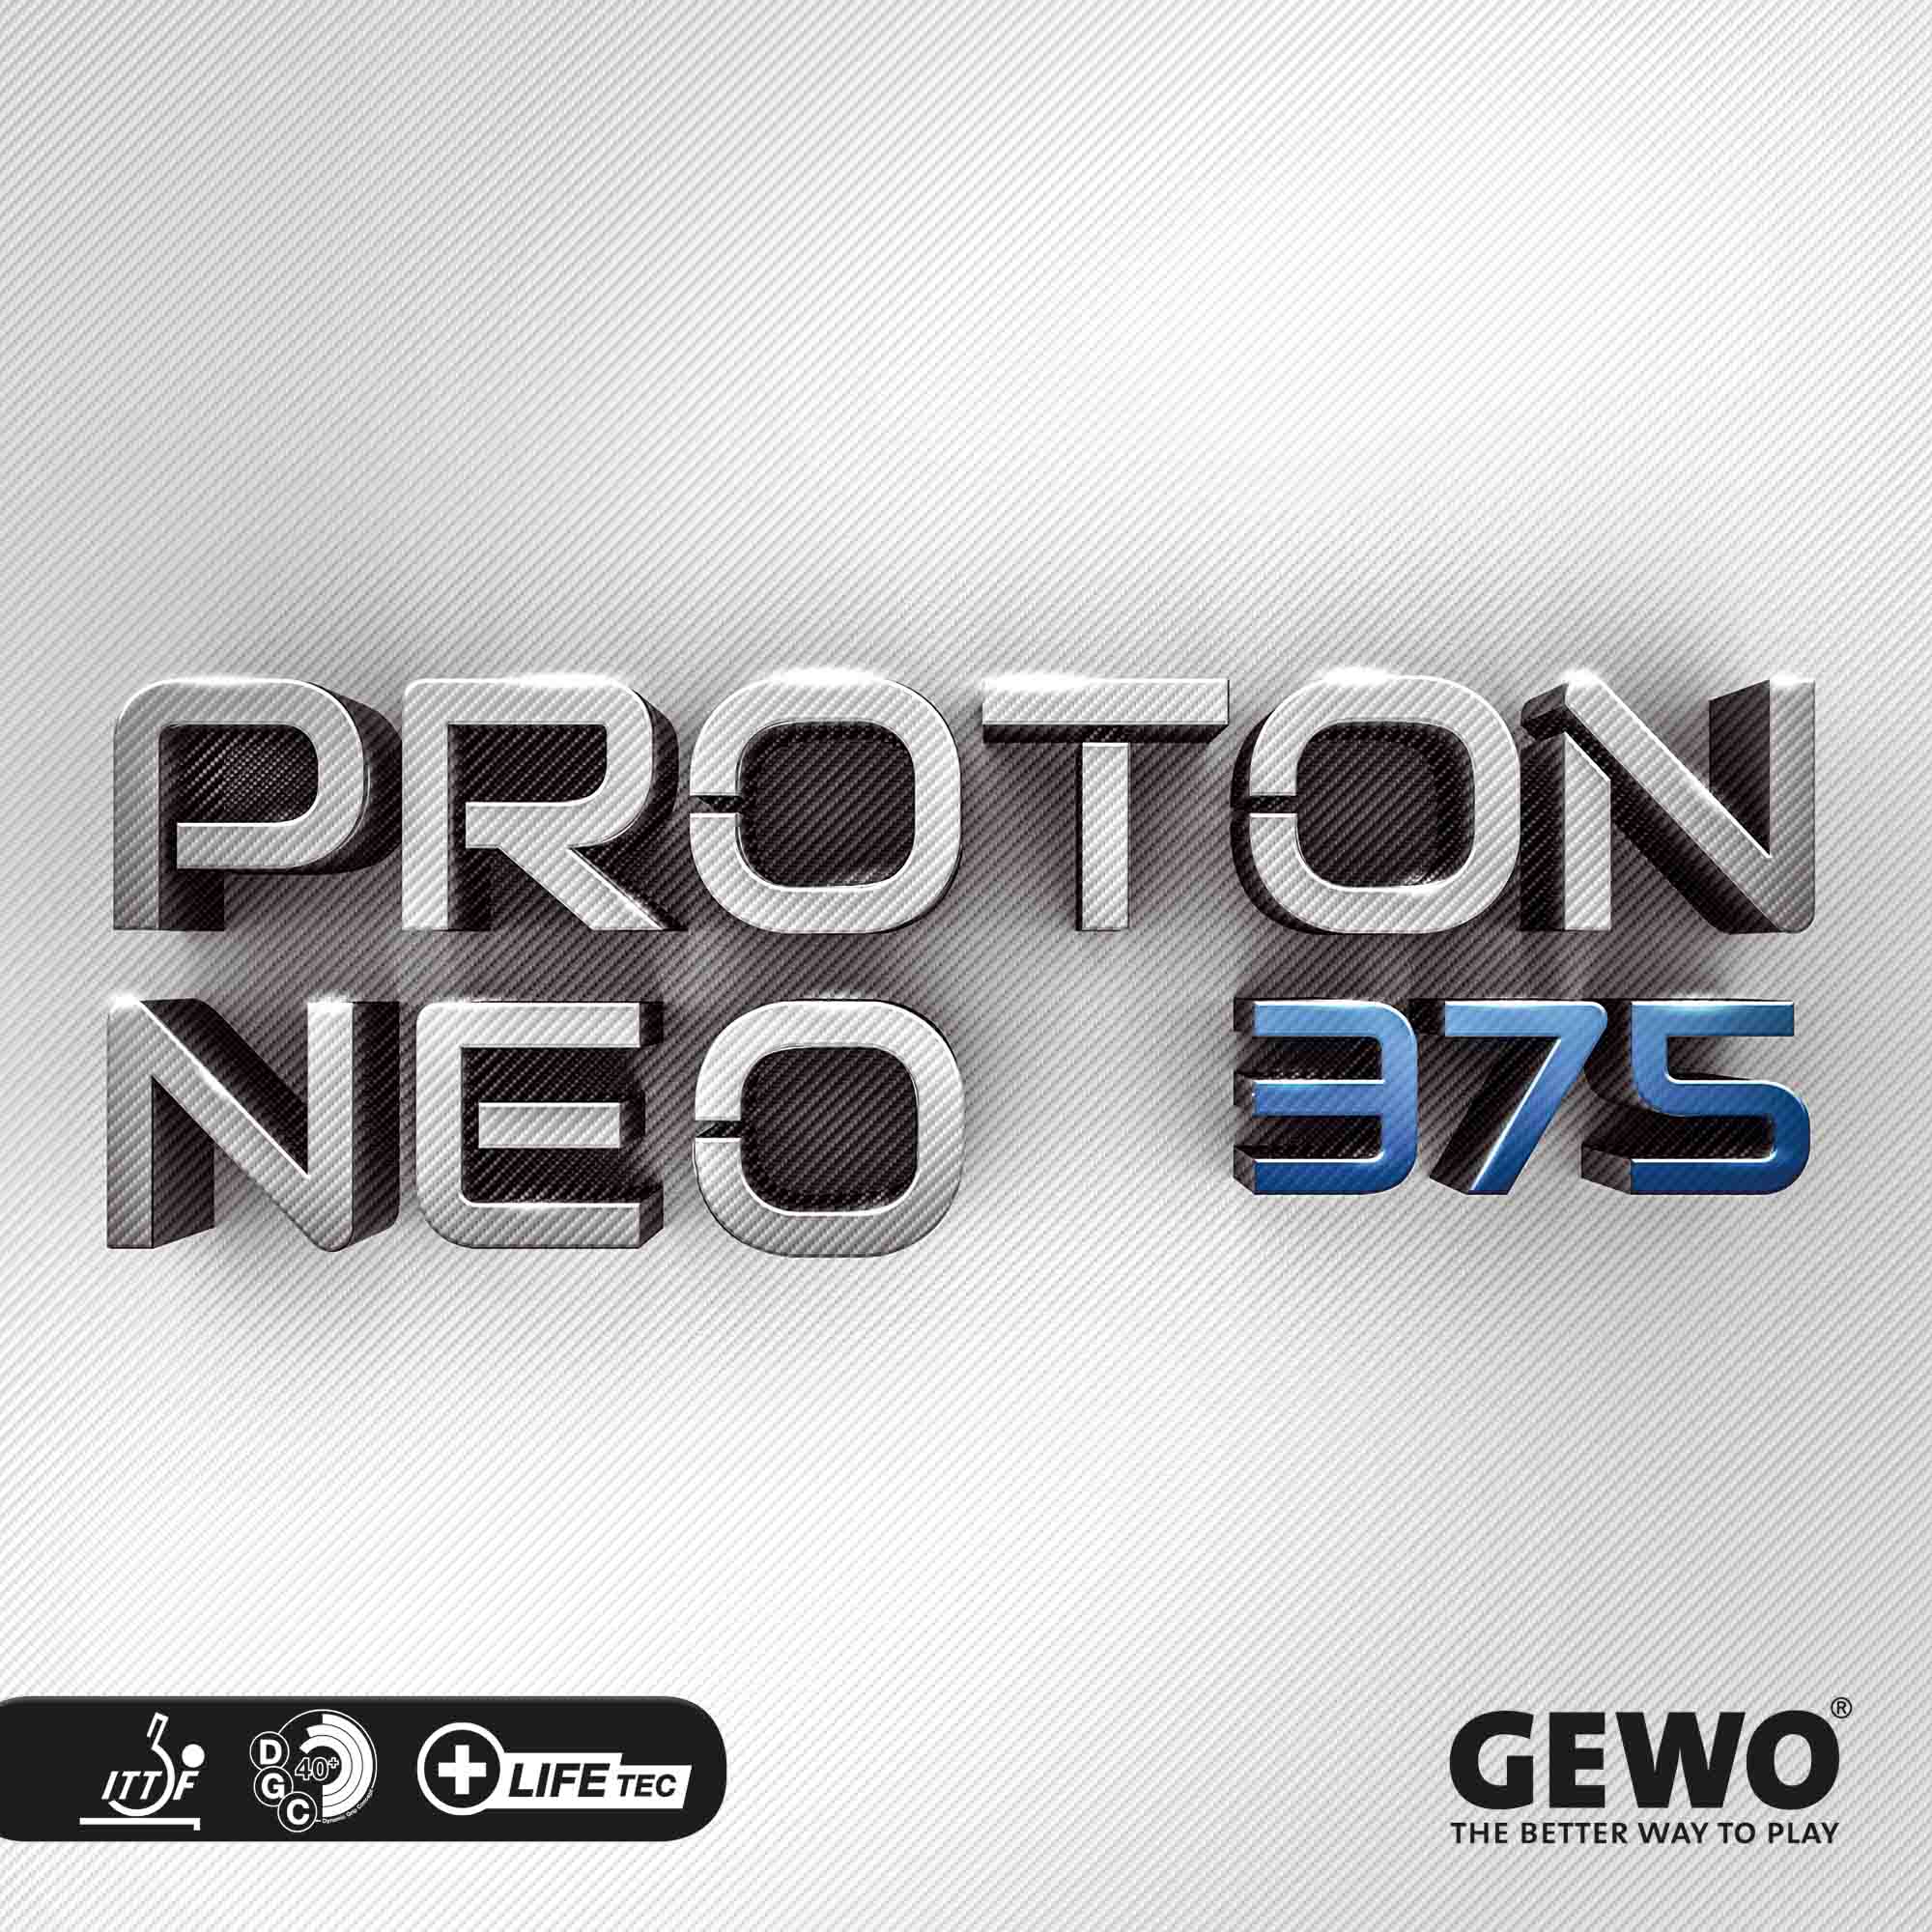 GEWO Rubber Proton Neo 375